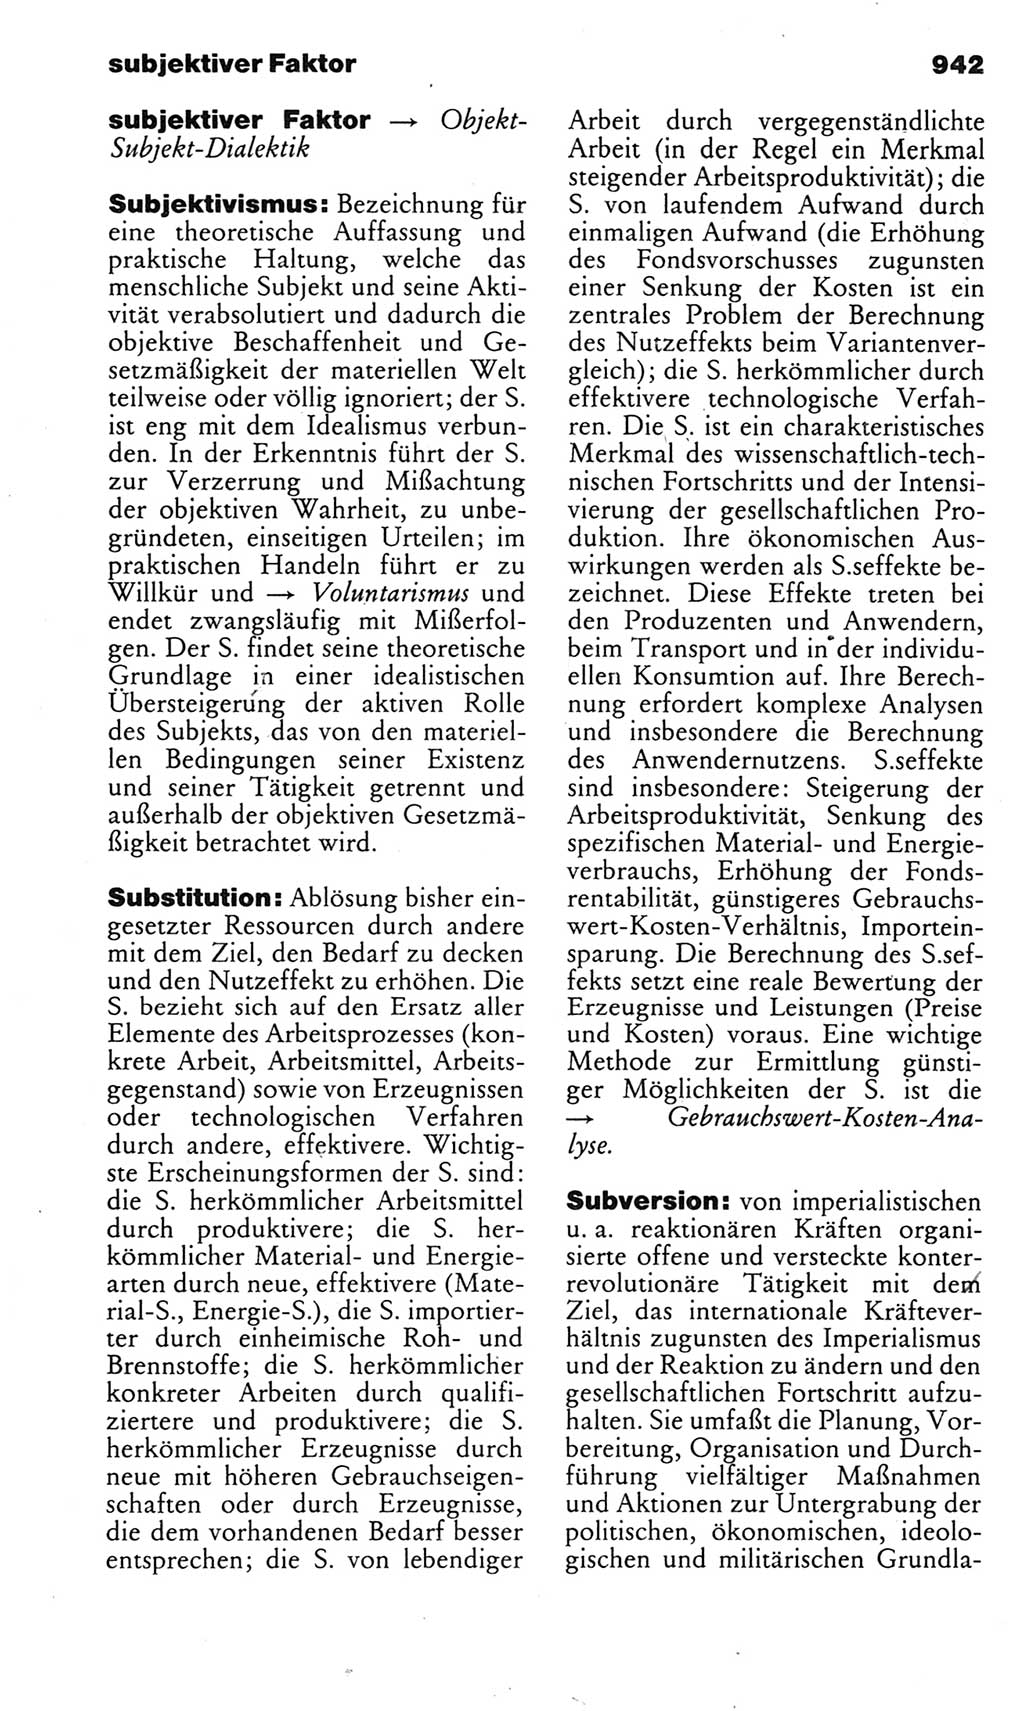 Kleines politisches Wörterbuch [Deutsche Demokratische Republik (DDR)] 1983, Seite 942 (Kl. pol. Wb. DDR 1983, S. 942)